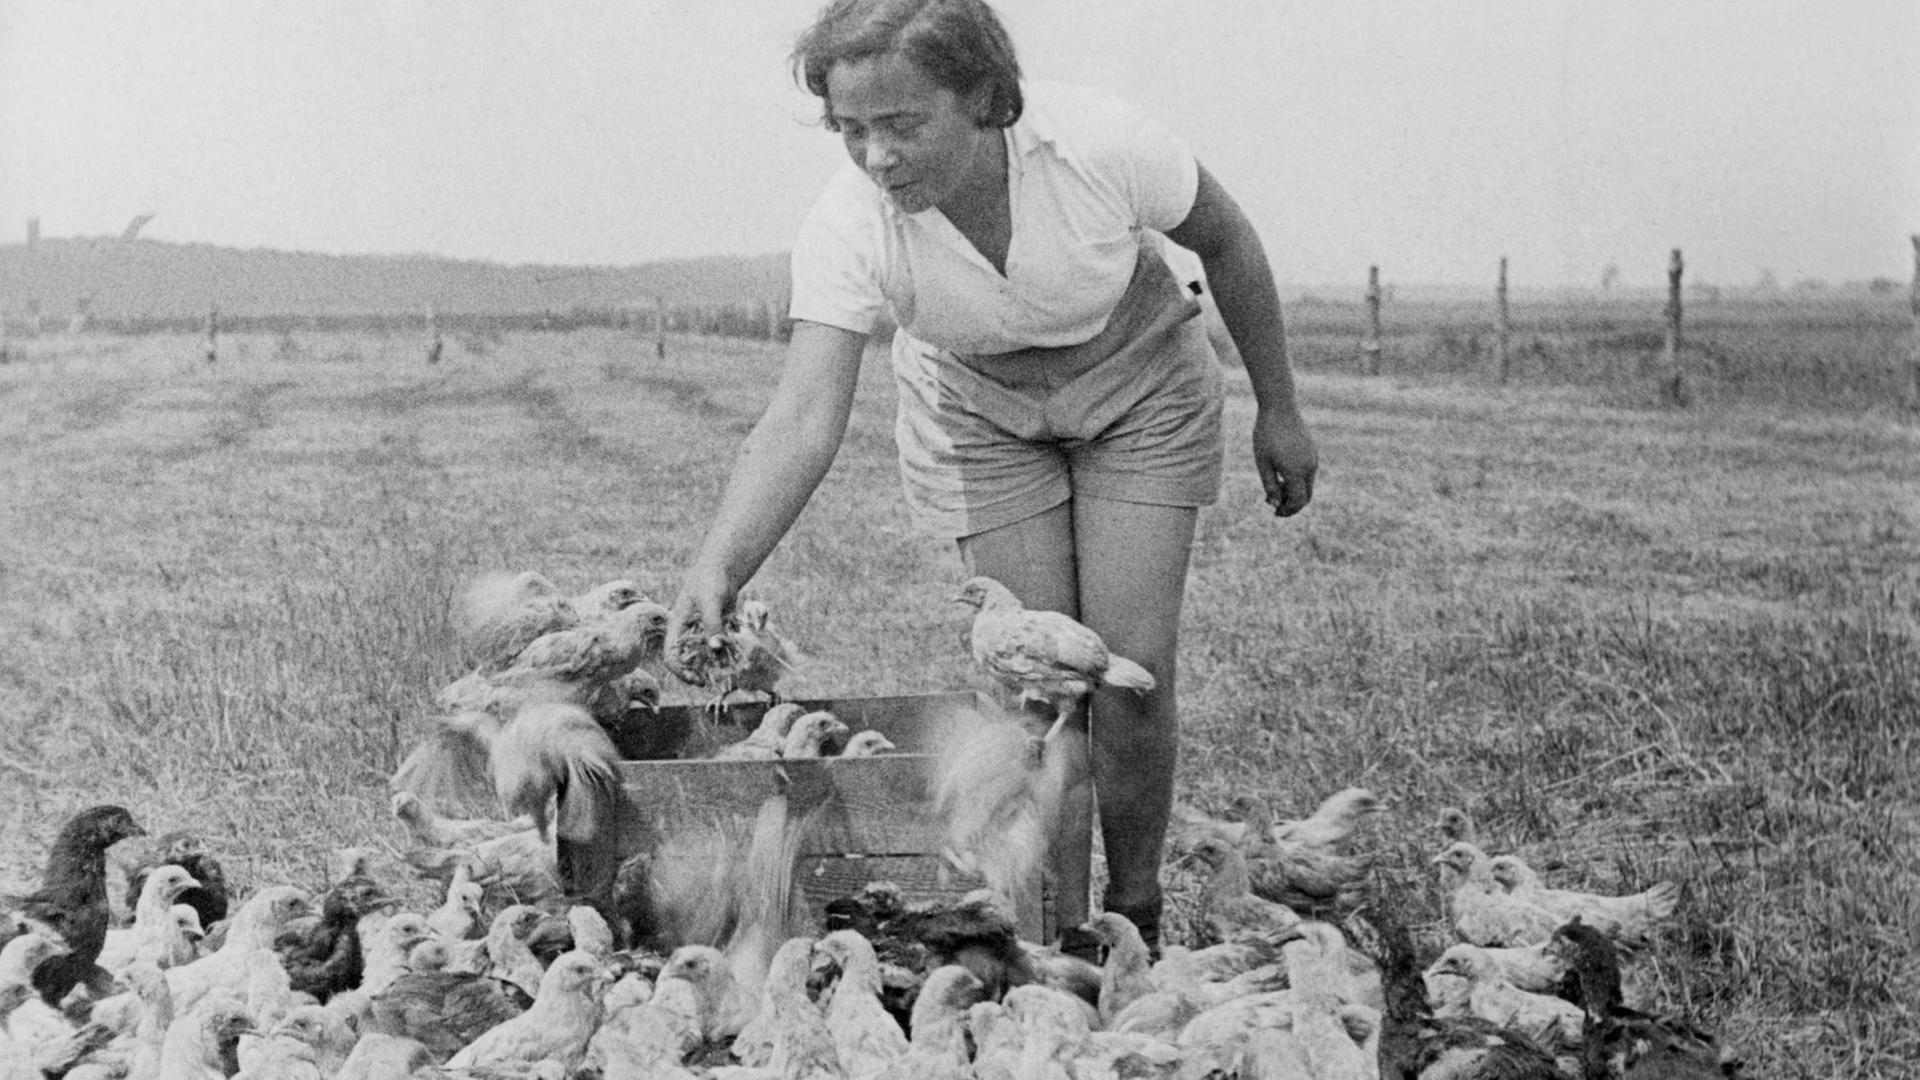 Eine junge Frau füttert Hühner auf dem Feld.